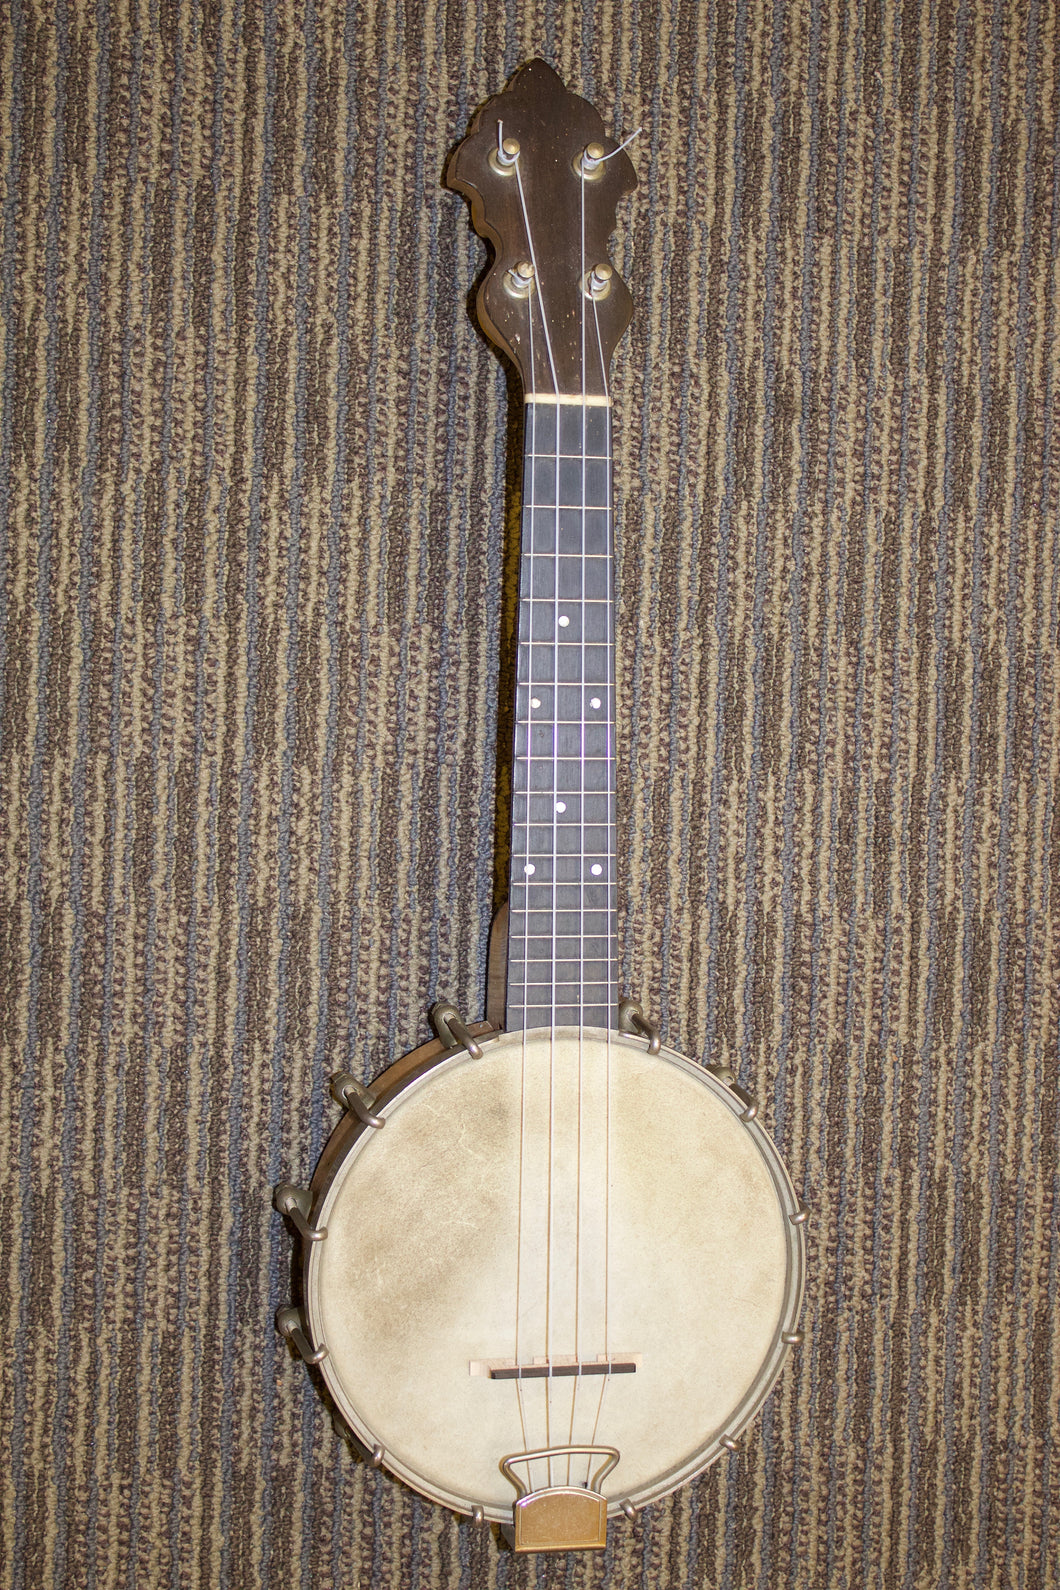 Weymann Model 225 Banjo-ukulele c. 1922/23